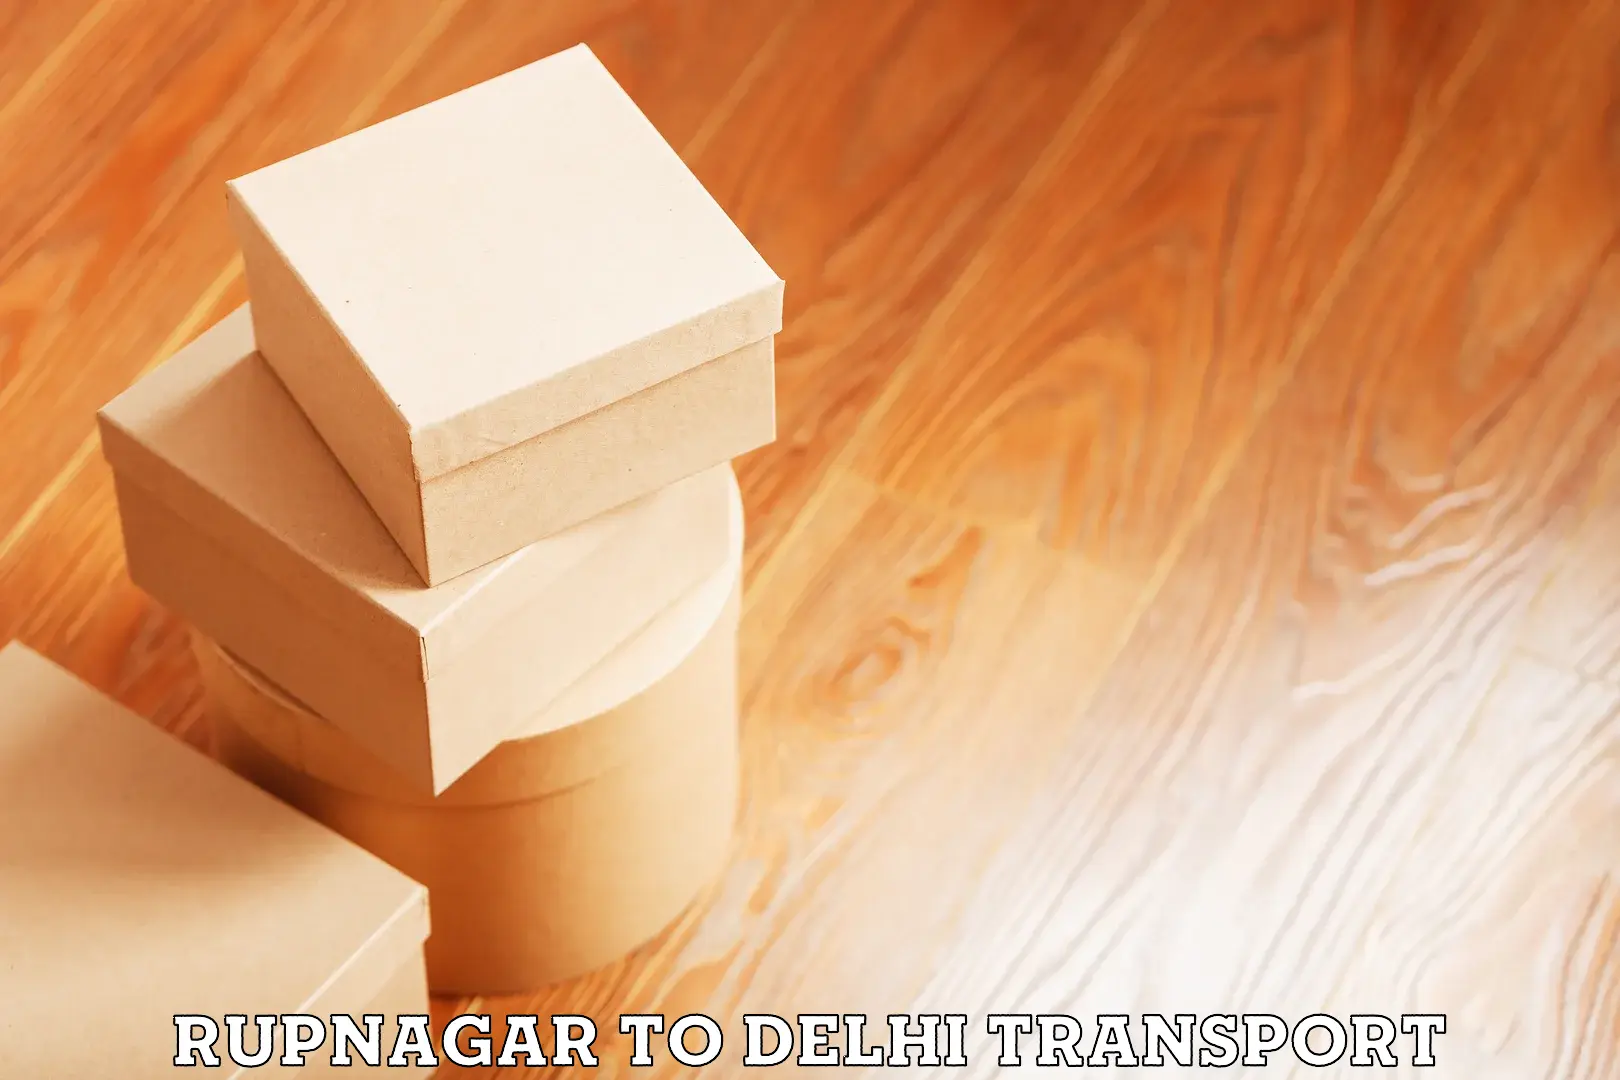 Road transport online services Rupnagar to Kalkaji